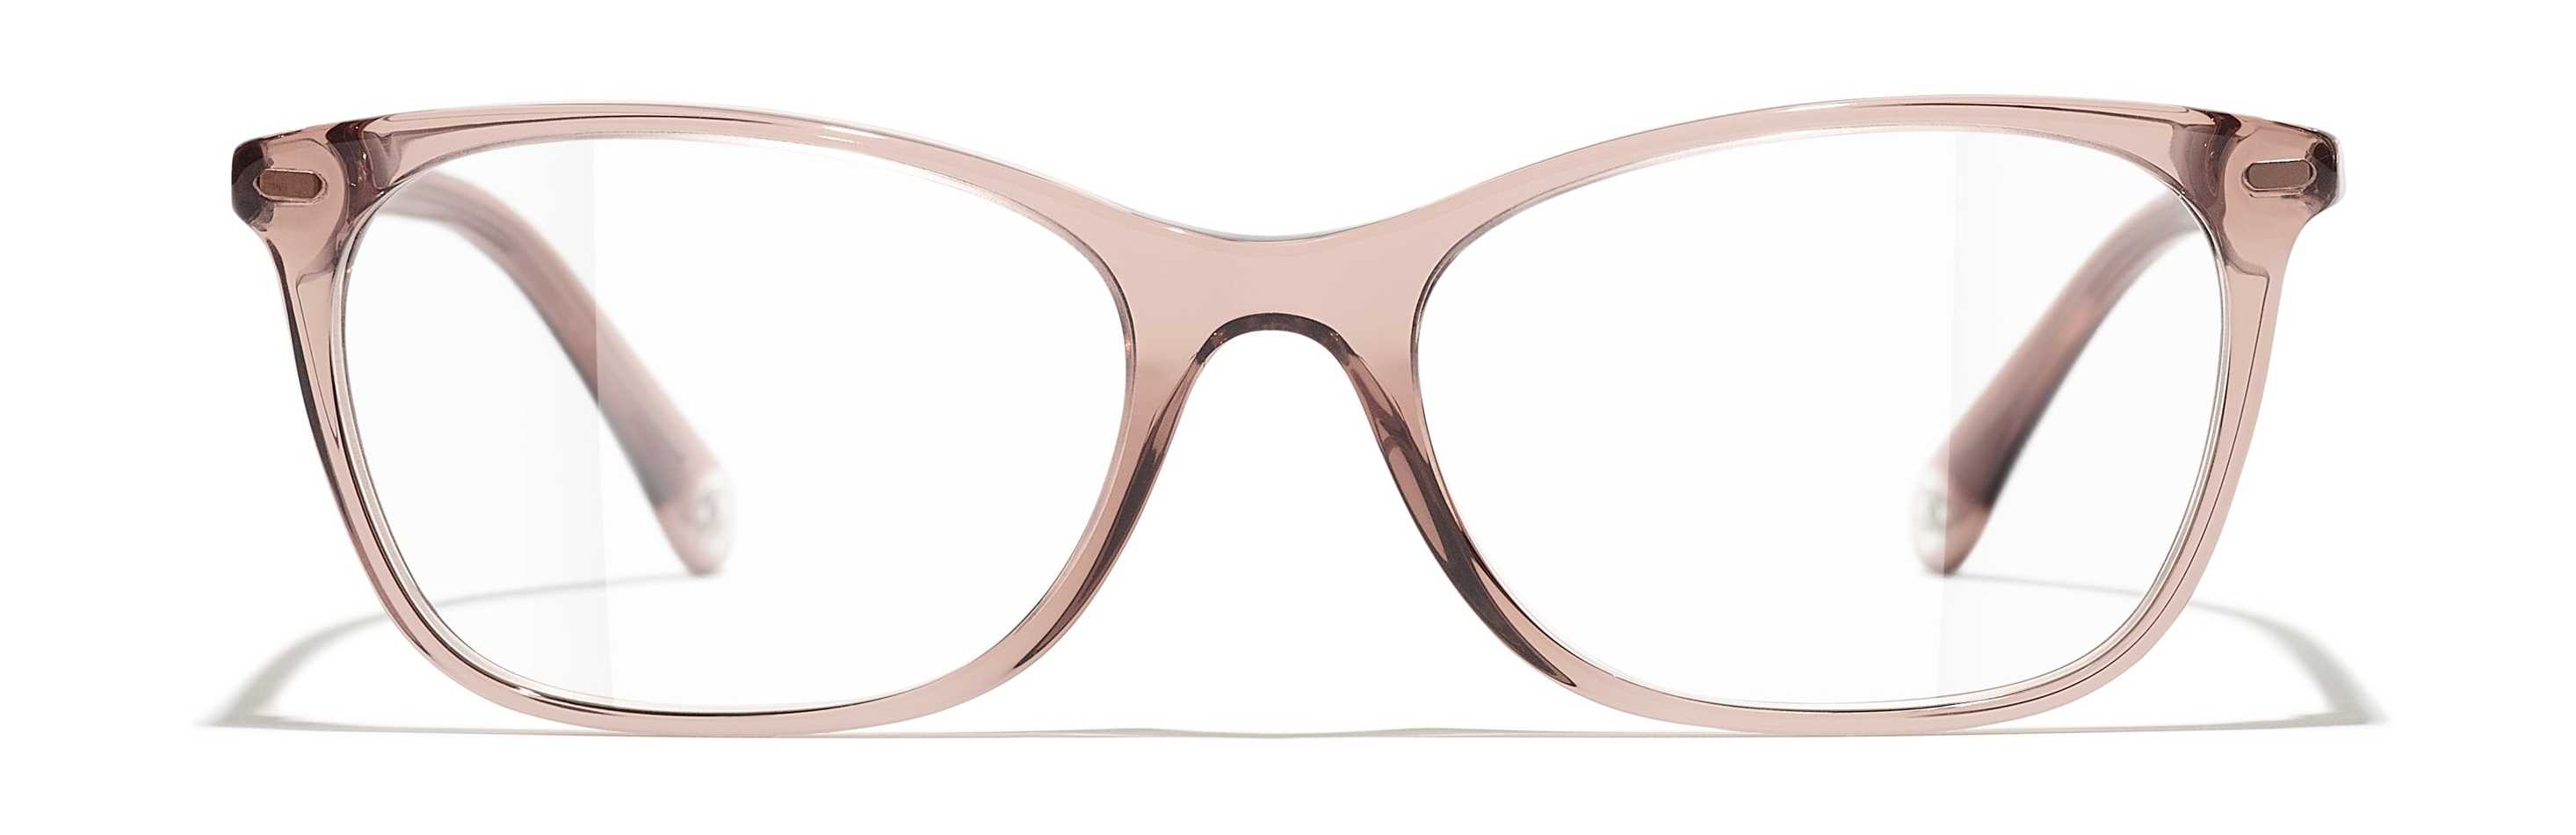 chanel optical frames for women